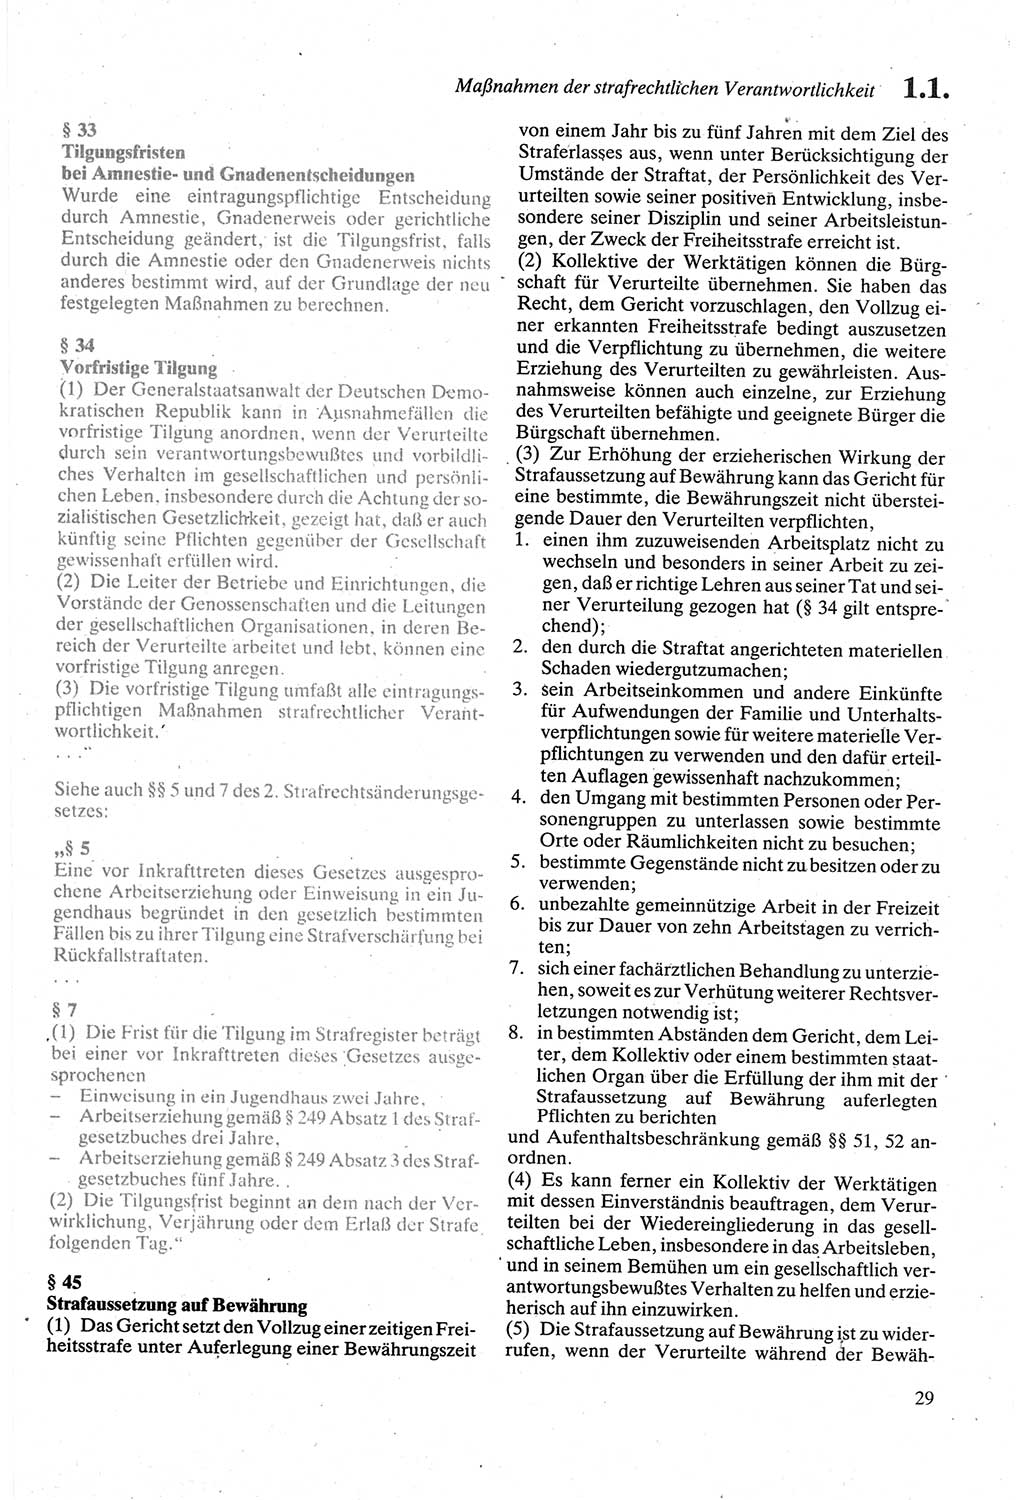 Strafgesetzbuch (StGB) der Deutschen Demokratischen Republik (DDR) sowie angrenzende Gesetze und Bestimmungen 1979, Seite 29 (StGB DDR Ges. Best. 1979, S. 29)